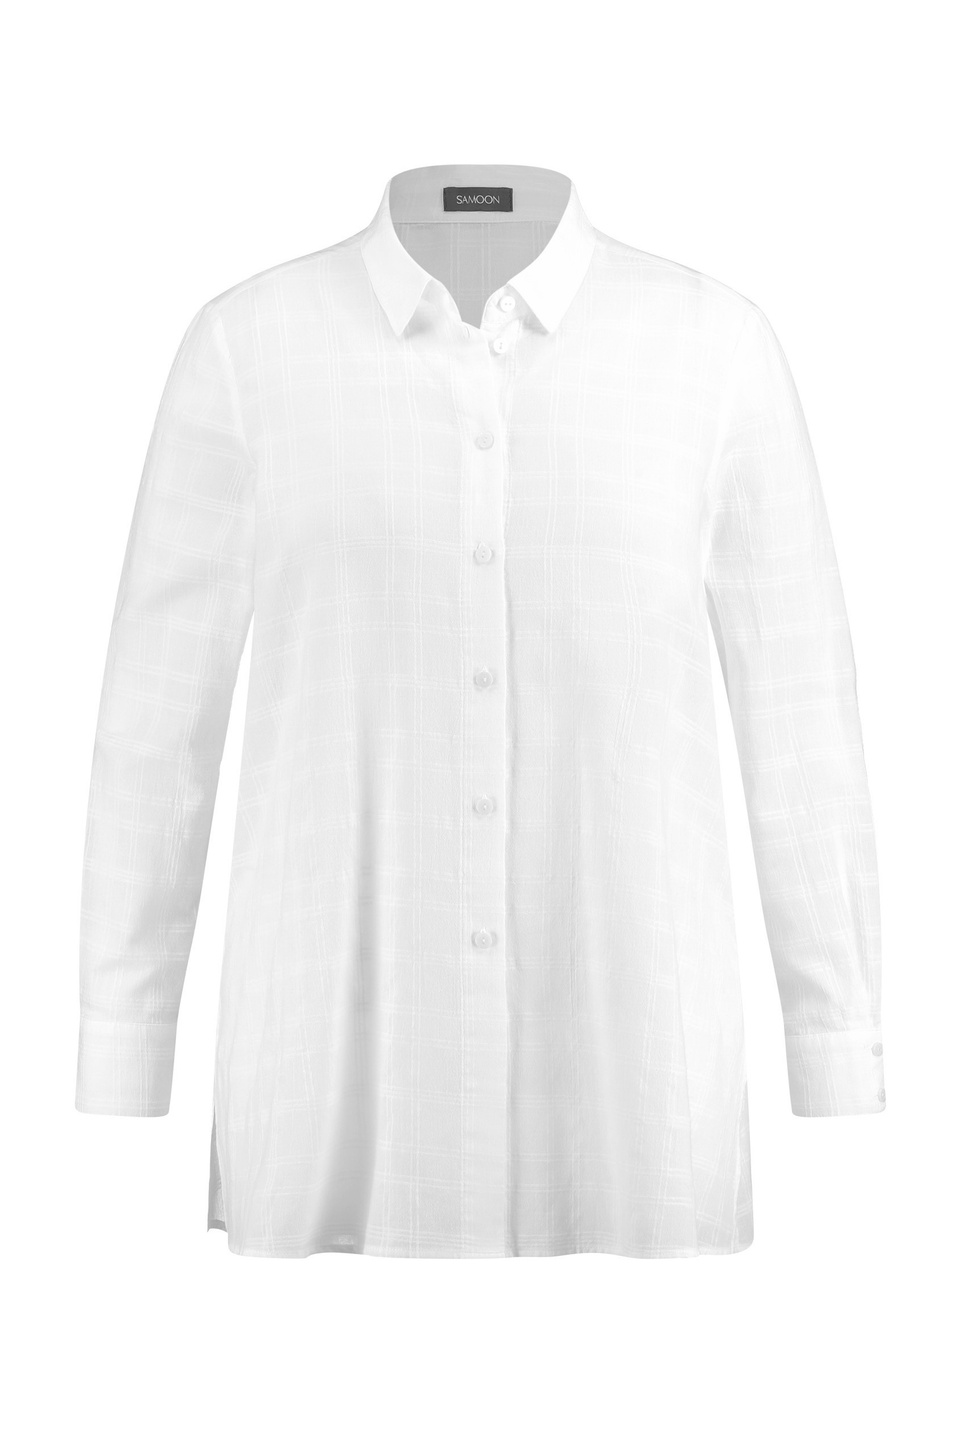 Samoon Расклешенная хлопковая блуза (цвет ), артикул 960499-29174 | Фото 1